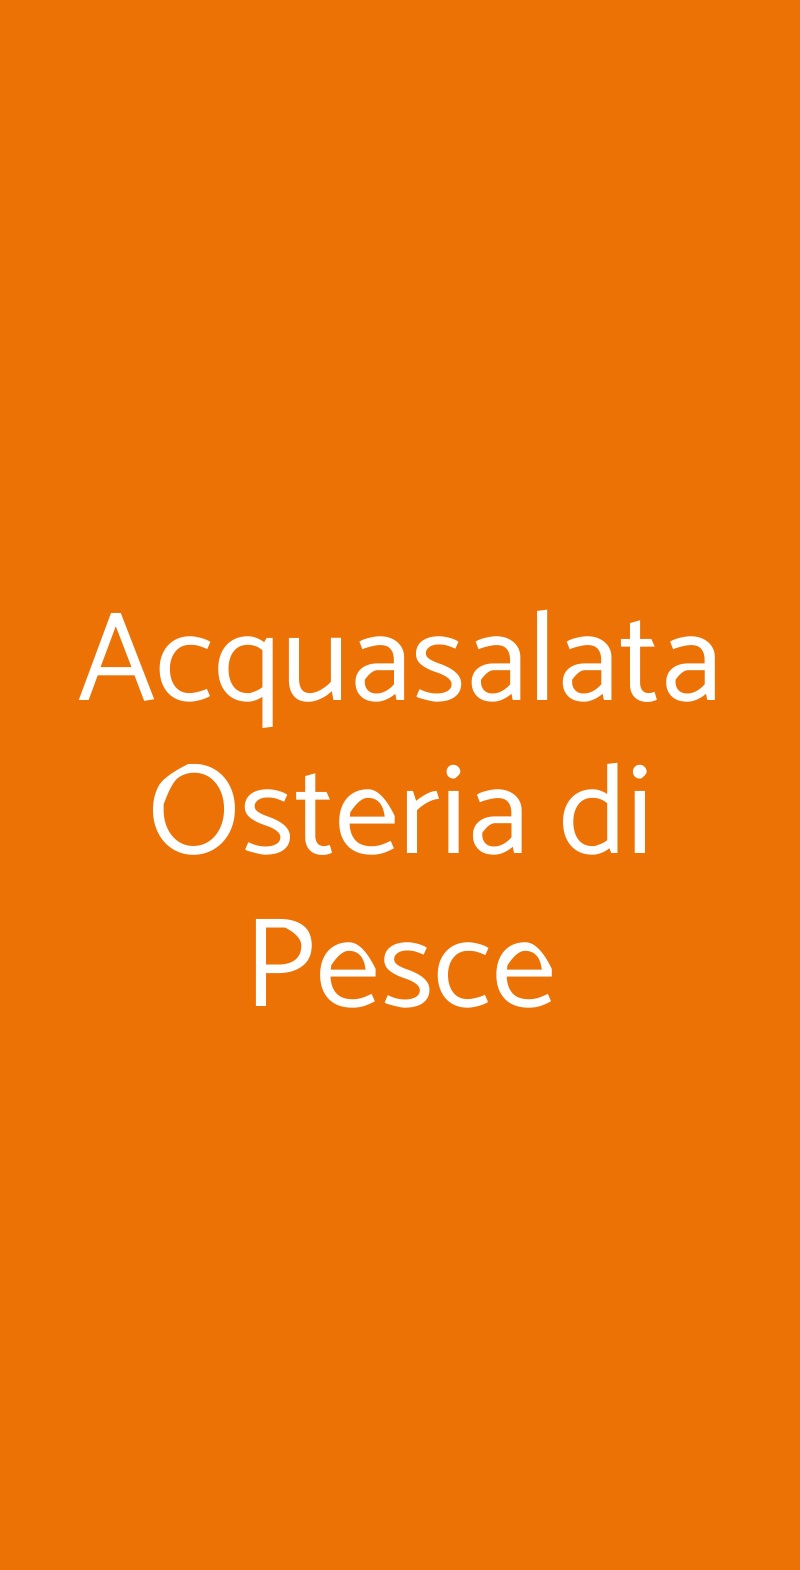 Acquasalata Osteria di Pesce Roma menù 1 pagina